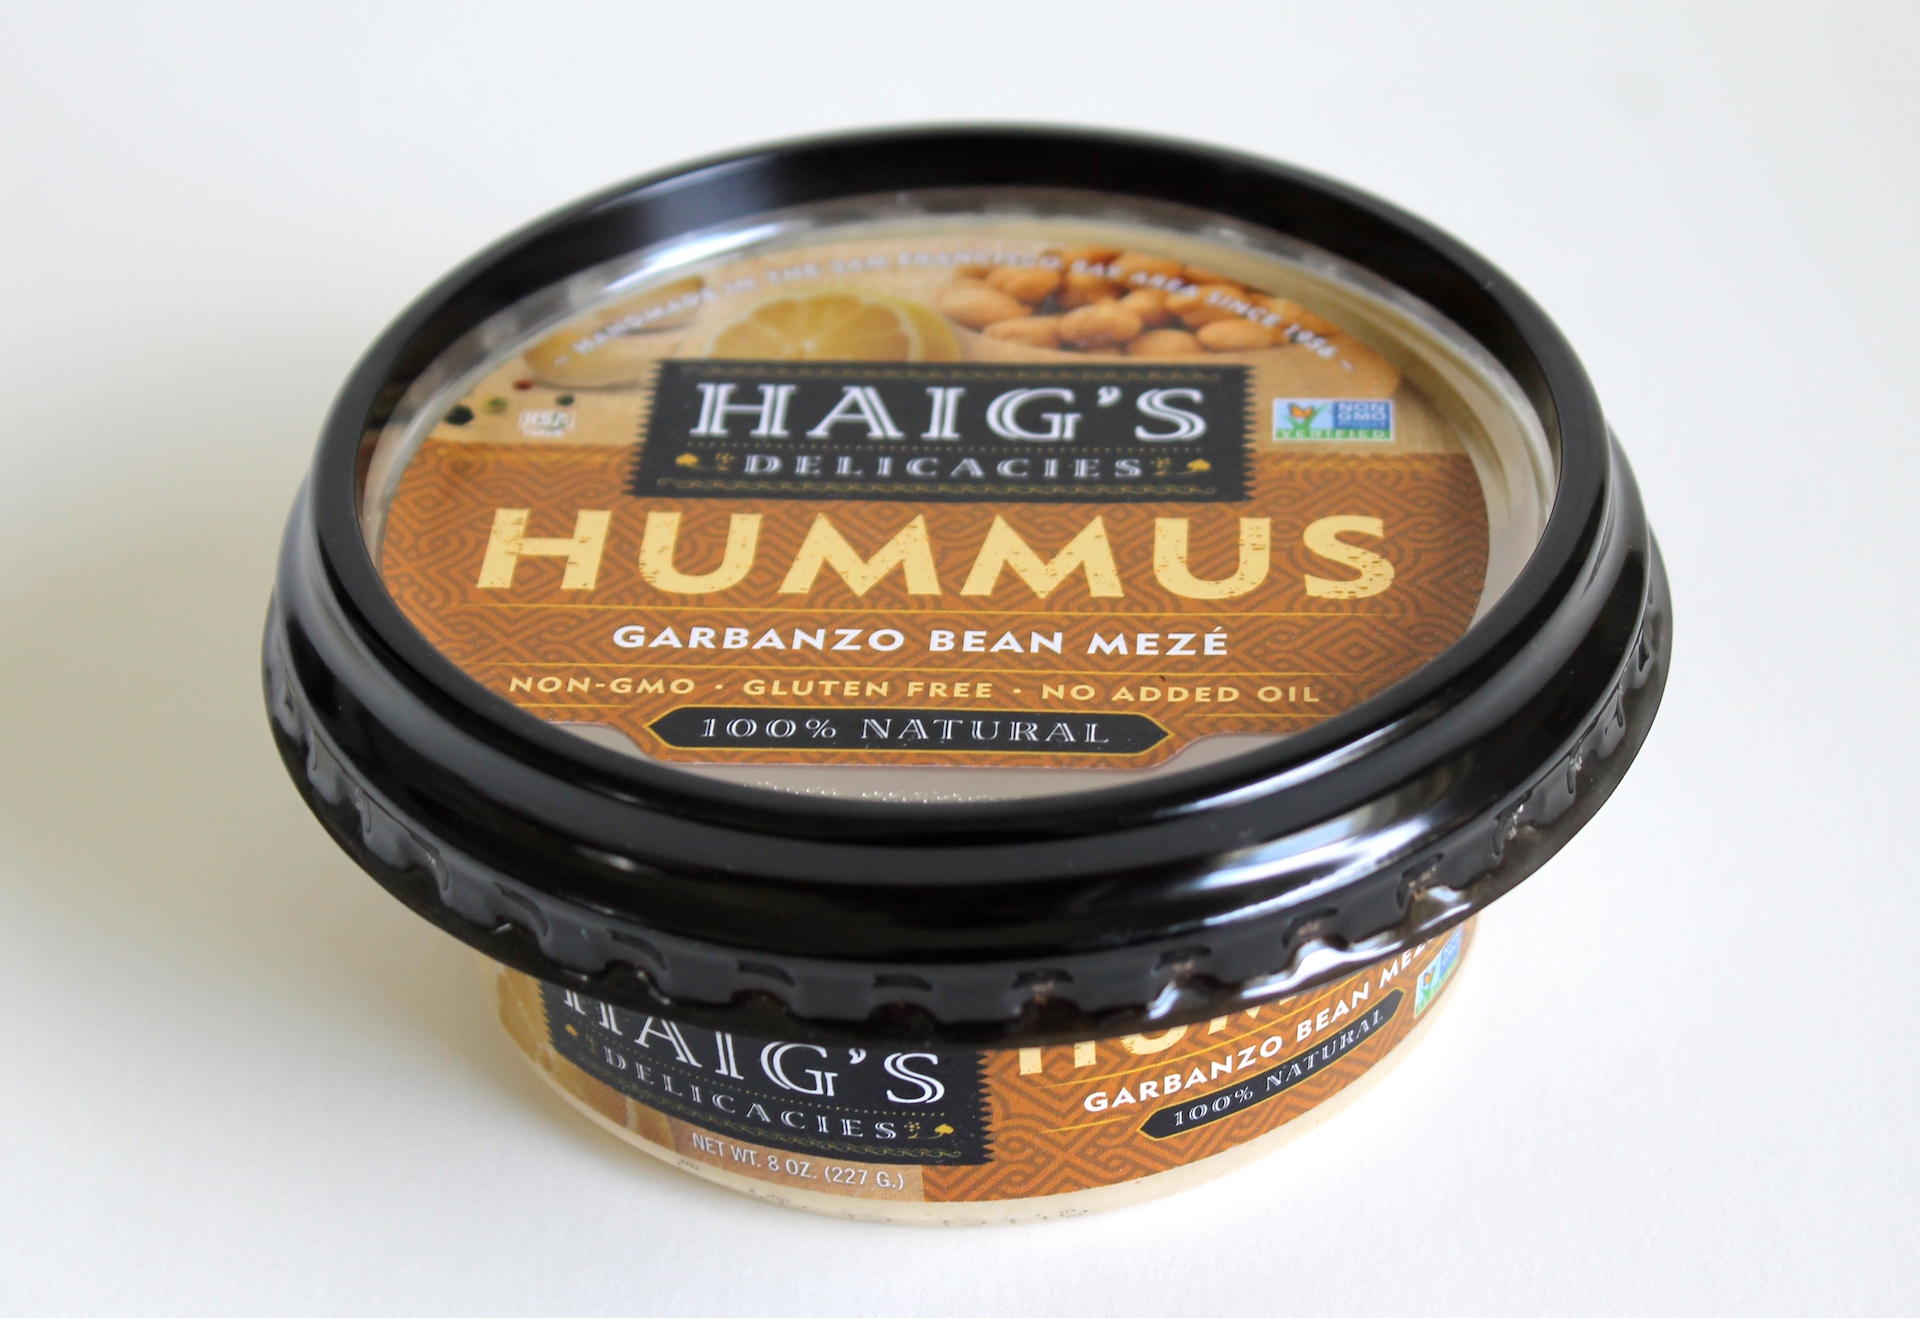 Haig’s Hummus Garbanzo Bean Meze